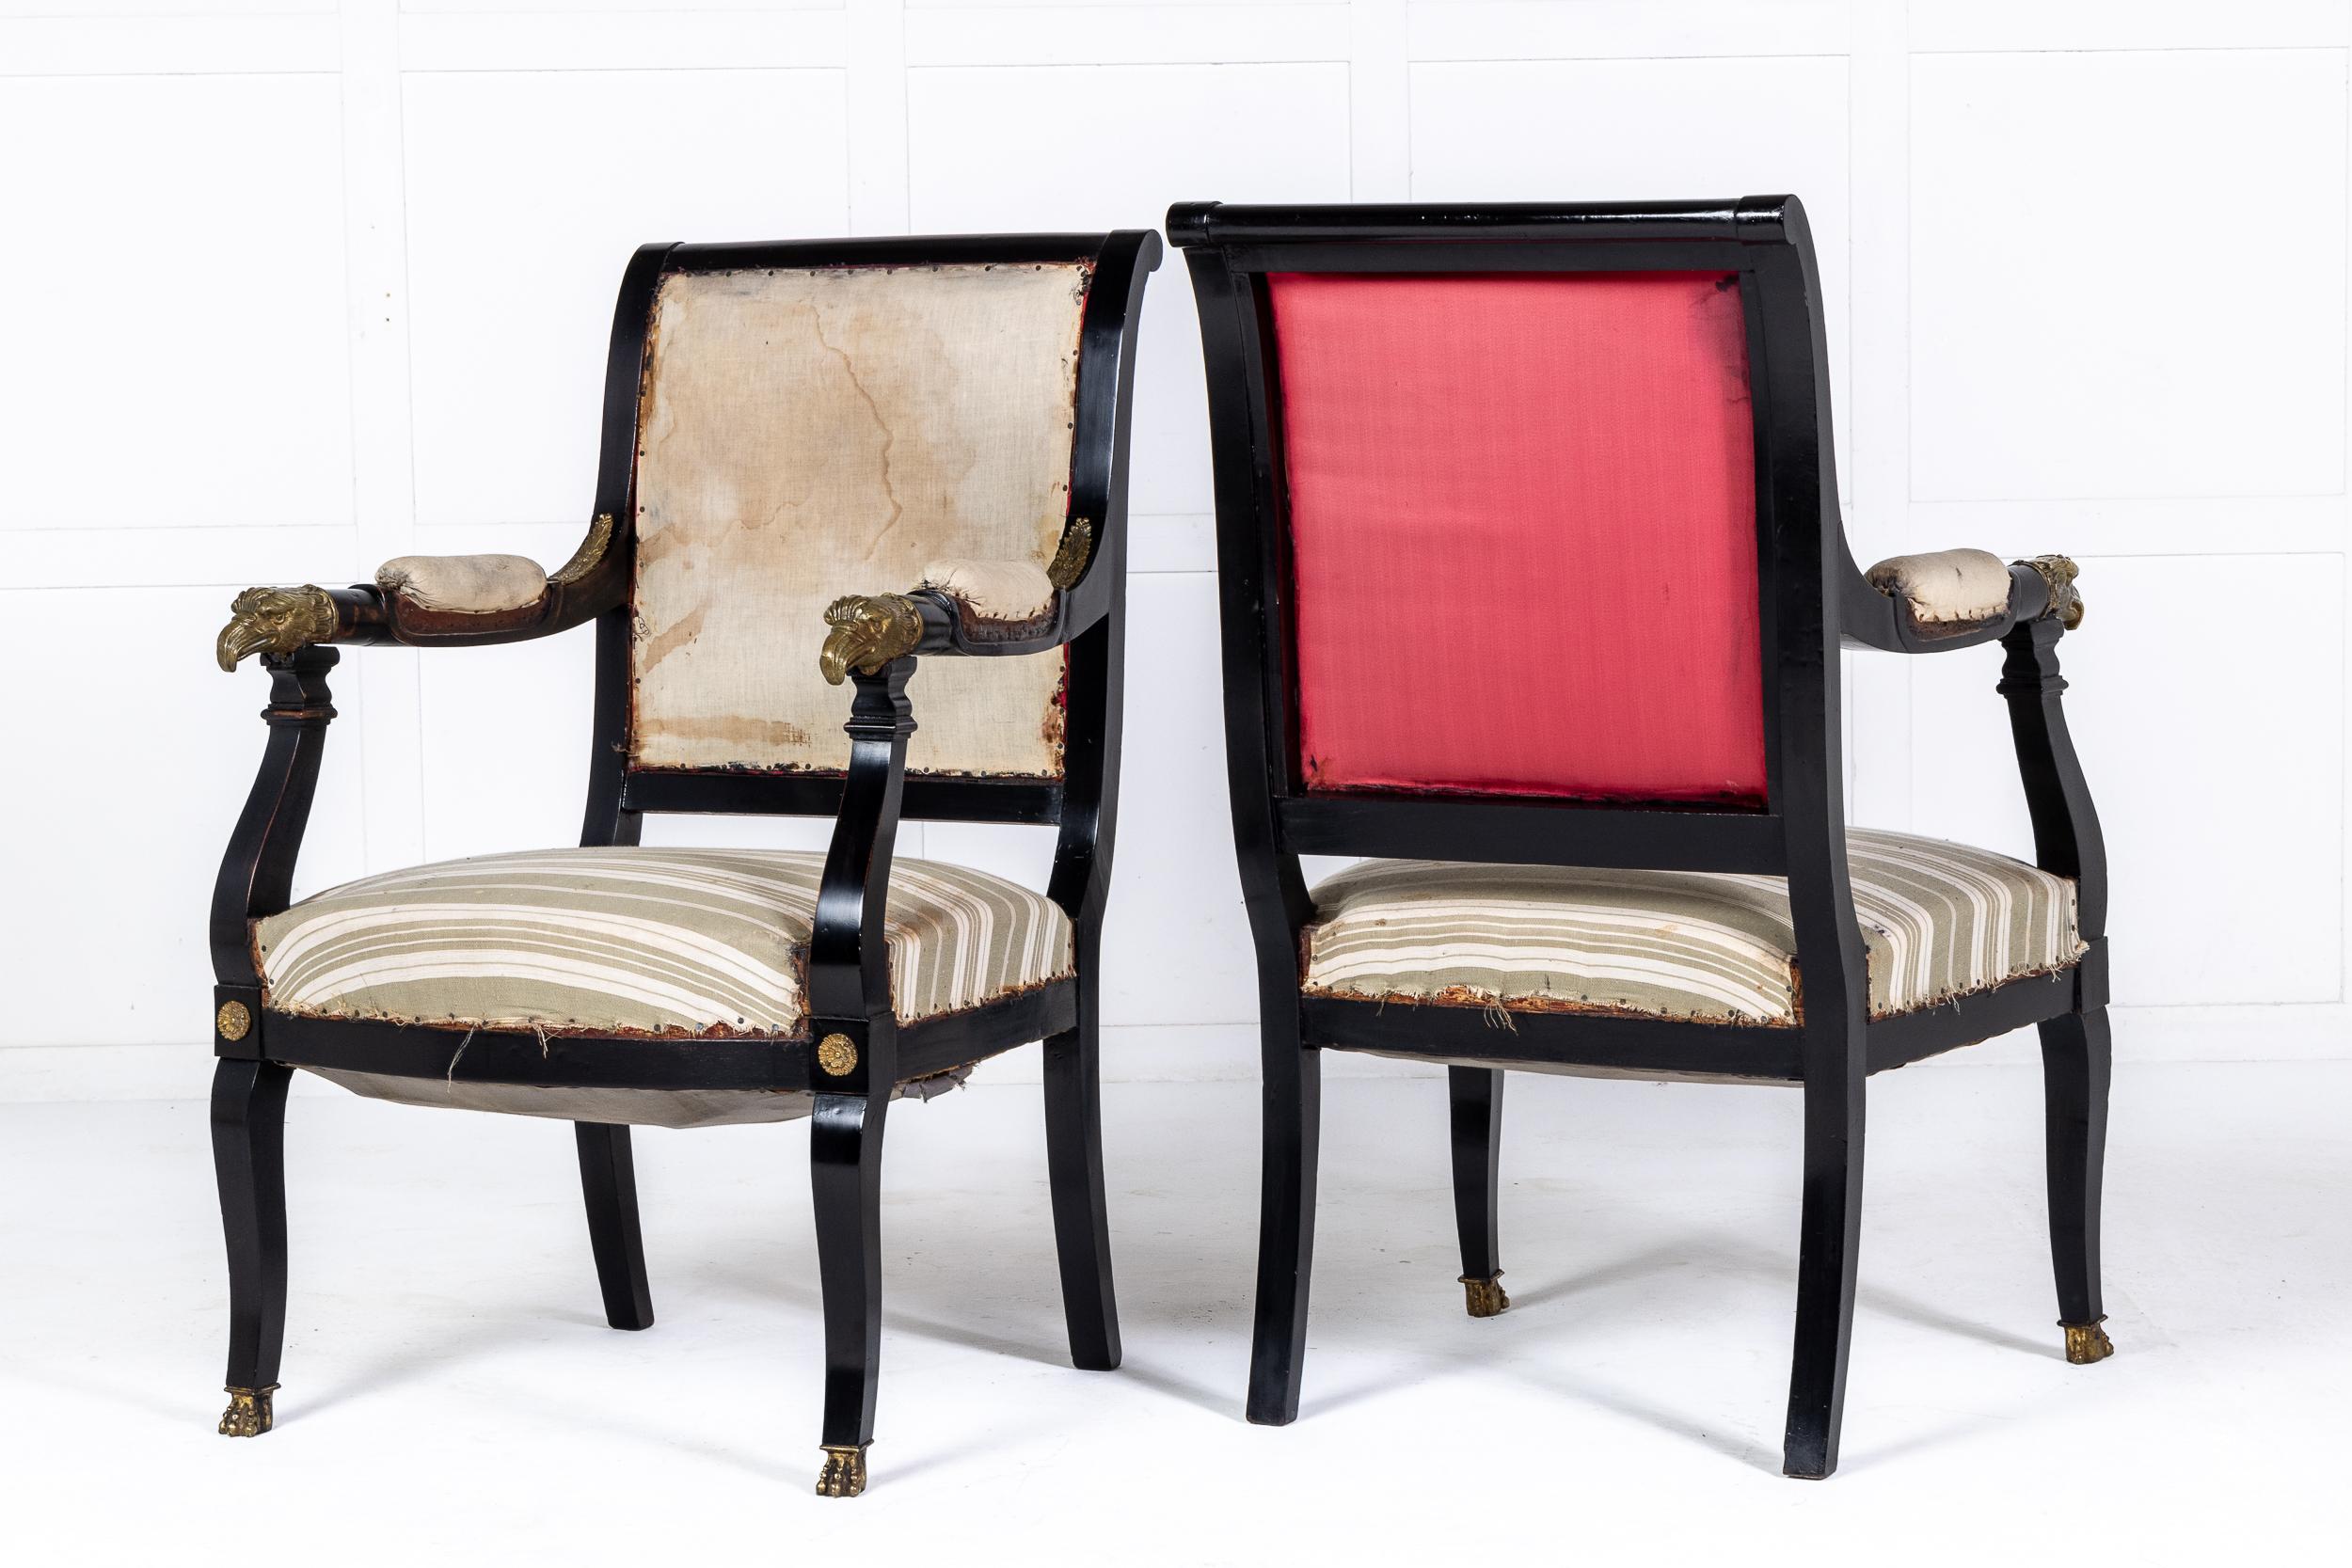 Ein Paar ebonisierte Sessel im französischen Empire-Stil mit feinen Adlerkopfbeschlägen.

Diese schönen Sessel im Empire-Stil des frühen 19. Jahrhunderts wurden um 1910 in Frankreich hergestellt. Die ebonisierte Oberfläche steht in schönem Kontrast